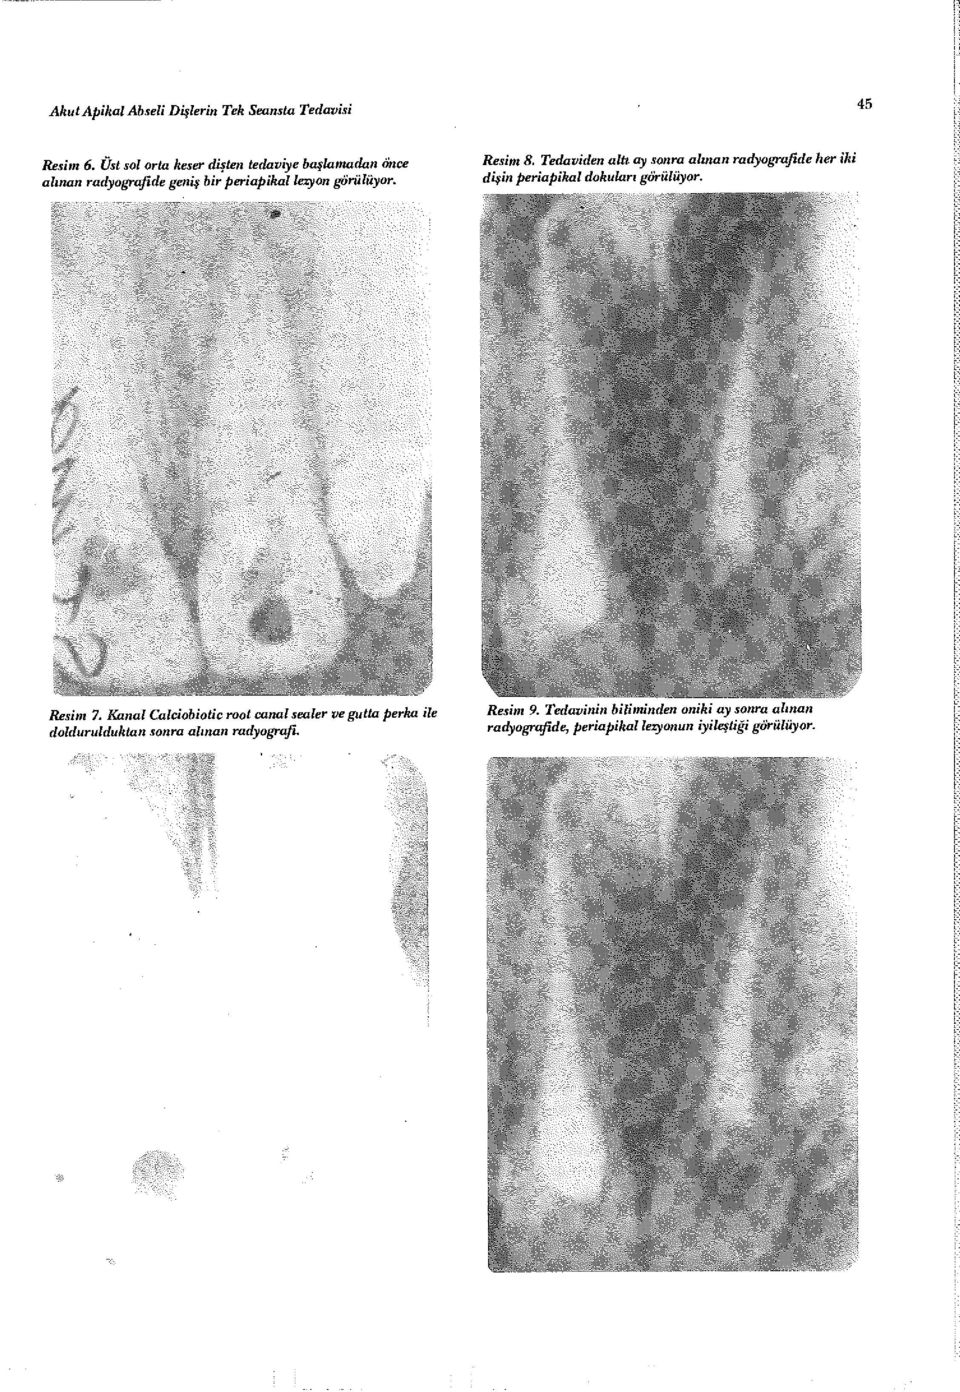 Tedaviden alti ay sonra alınan radyografide dişin periapihal dokuları görülüyor. Resim 7.